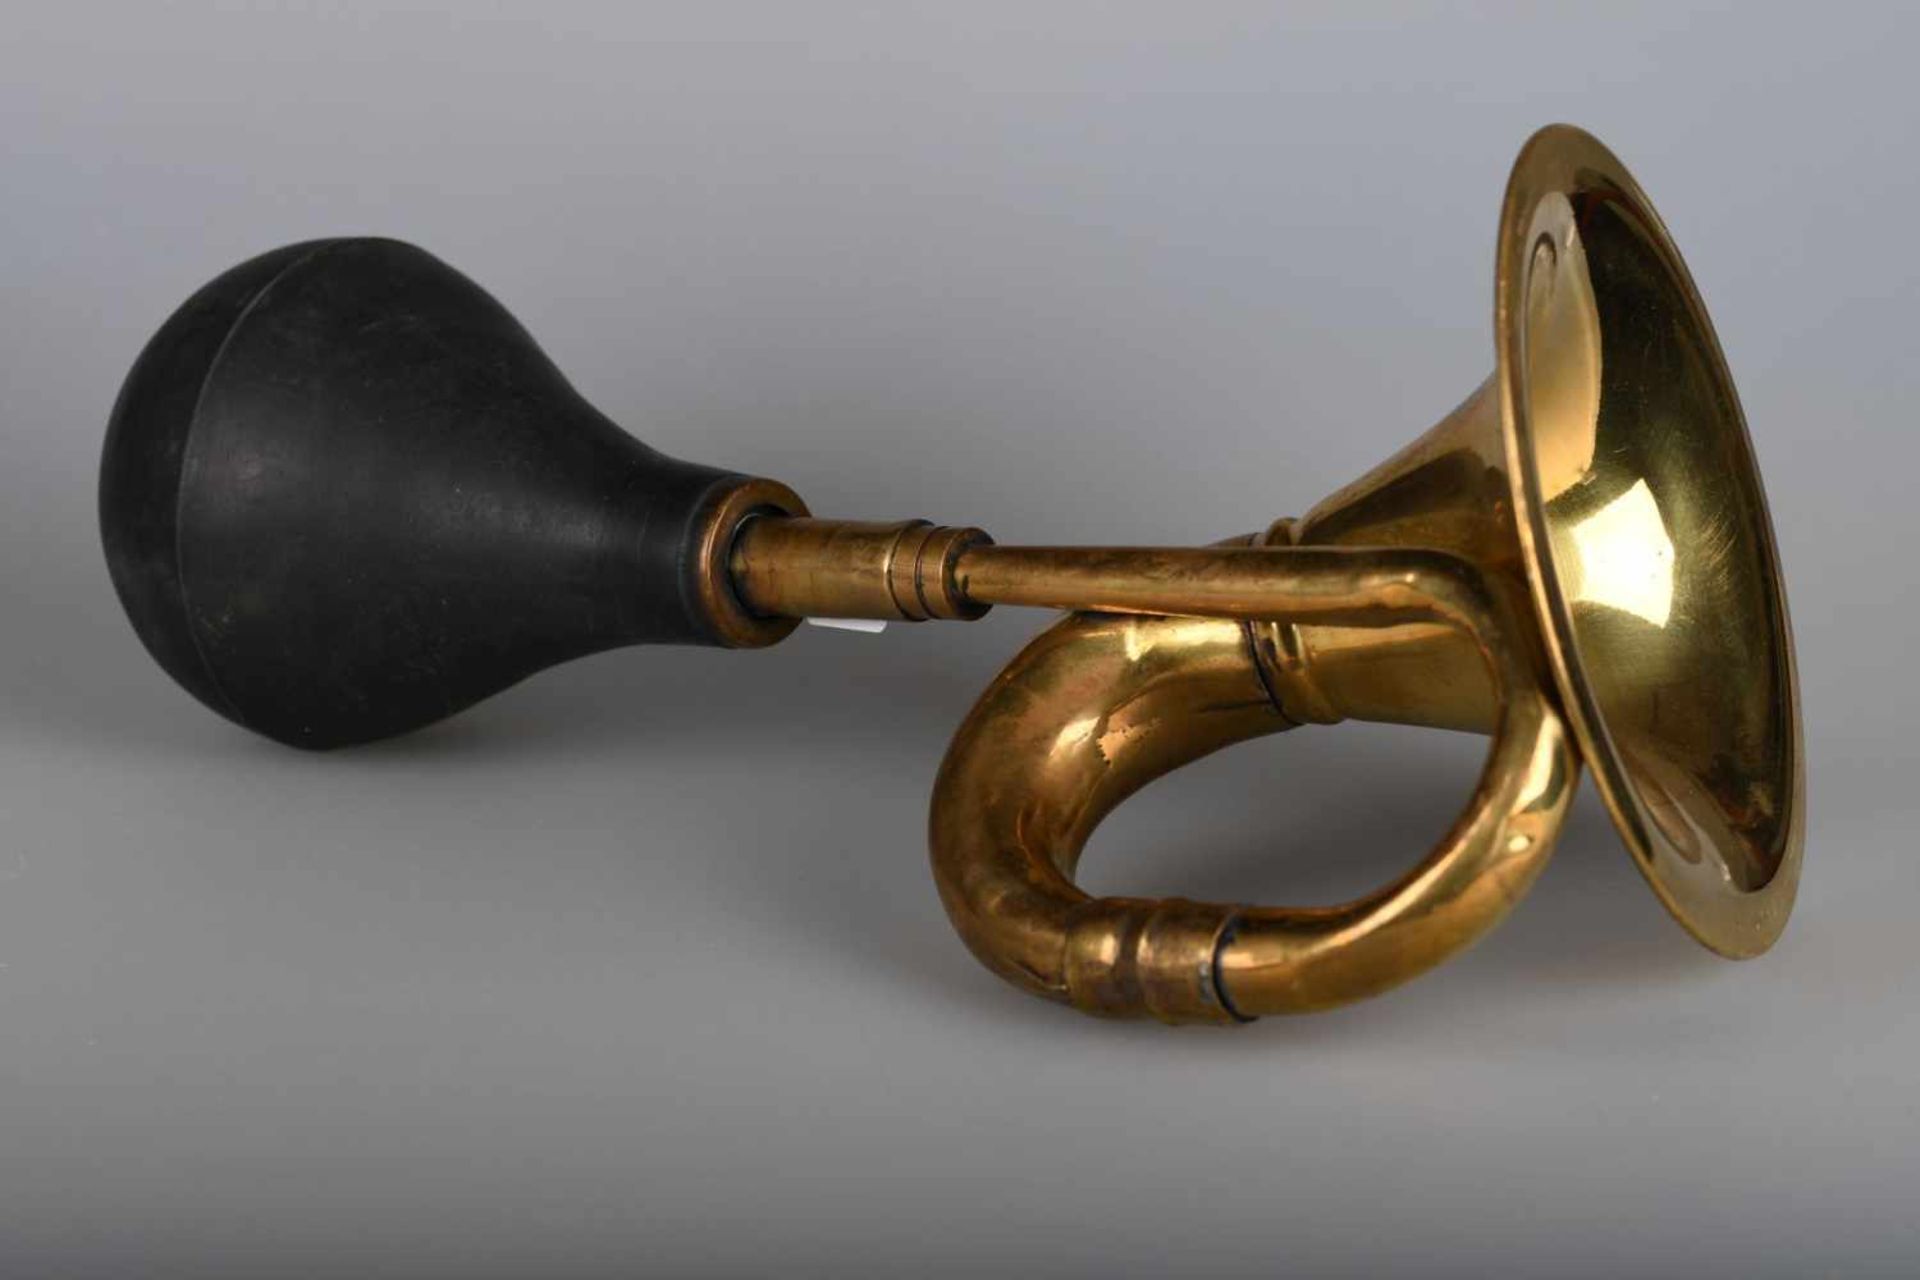 Horn einer Kraftdroschke um 1900Poliertes Messing und großer schwarzer Gummibalg, l ca. 32 cm.